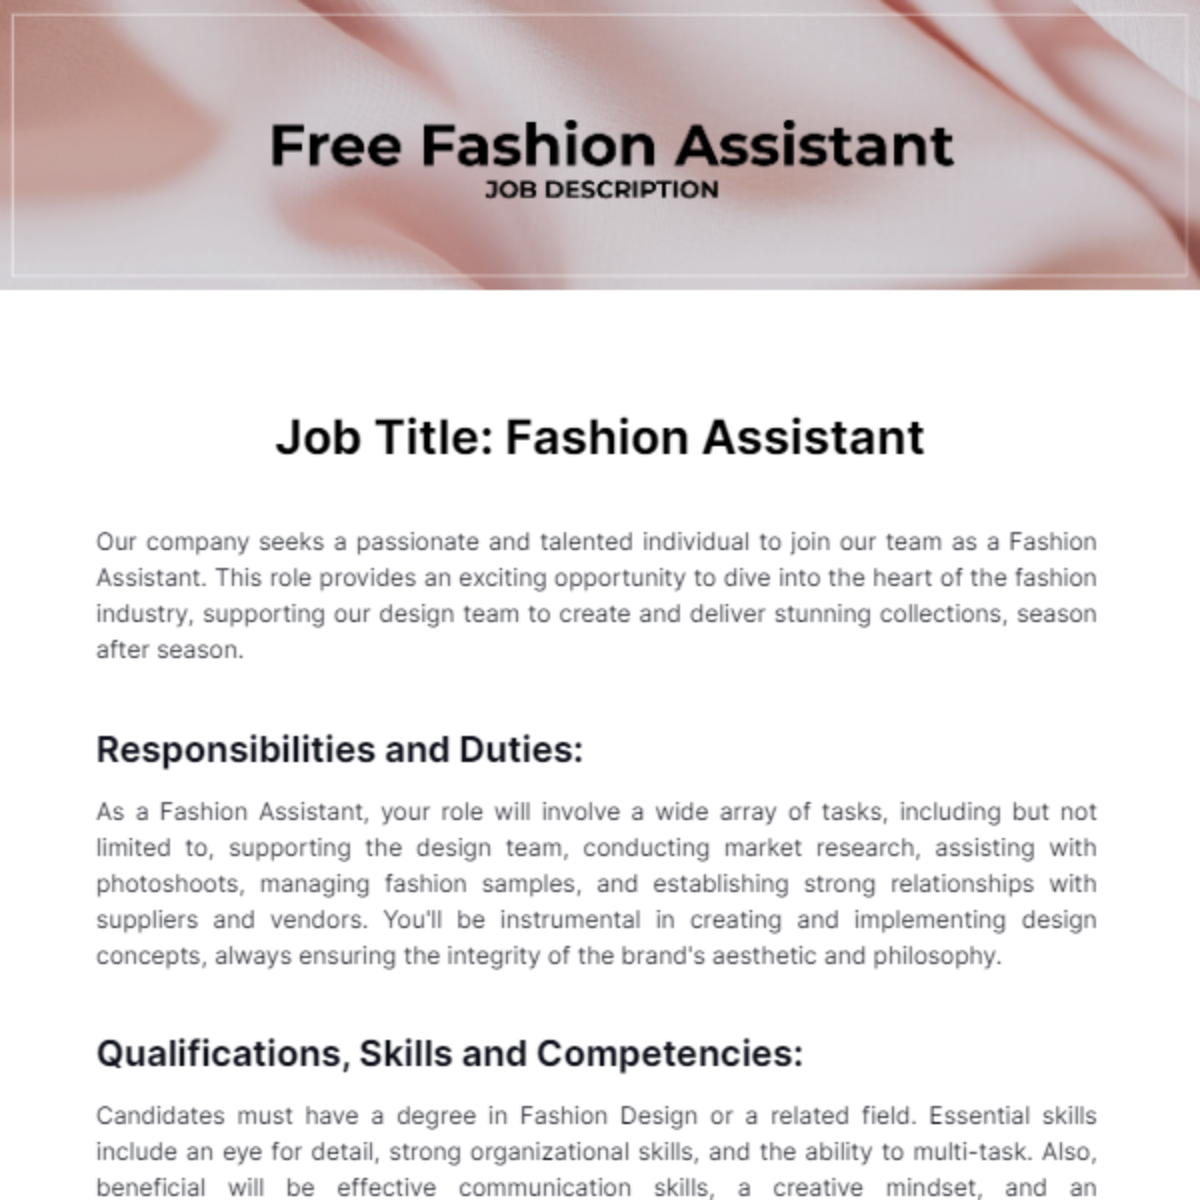 Free Fashion Assistant Job Description Template